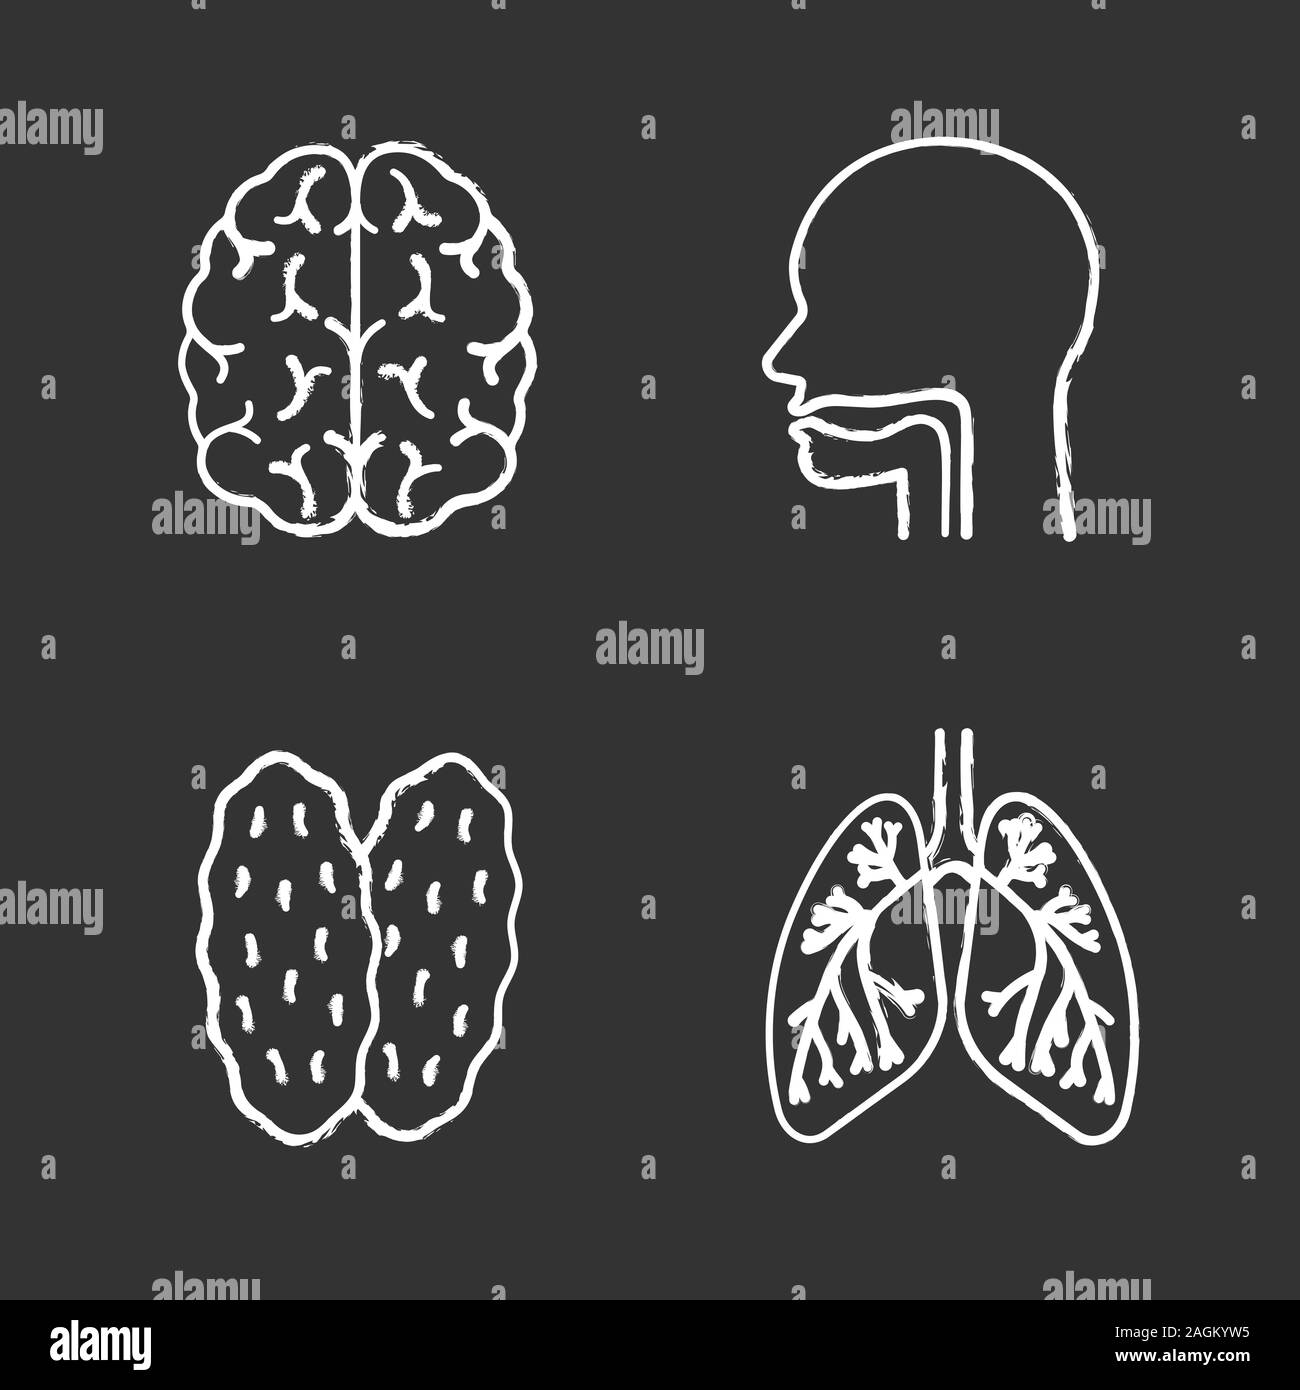 Les organes internes de la craie icons set. Cerveau, de la cavité orale, le thymus, les poumons avec les bronches et les bronchioles. Illustrations vectorielles chalkboard Illustration de Vecteur